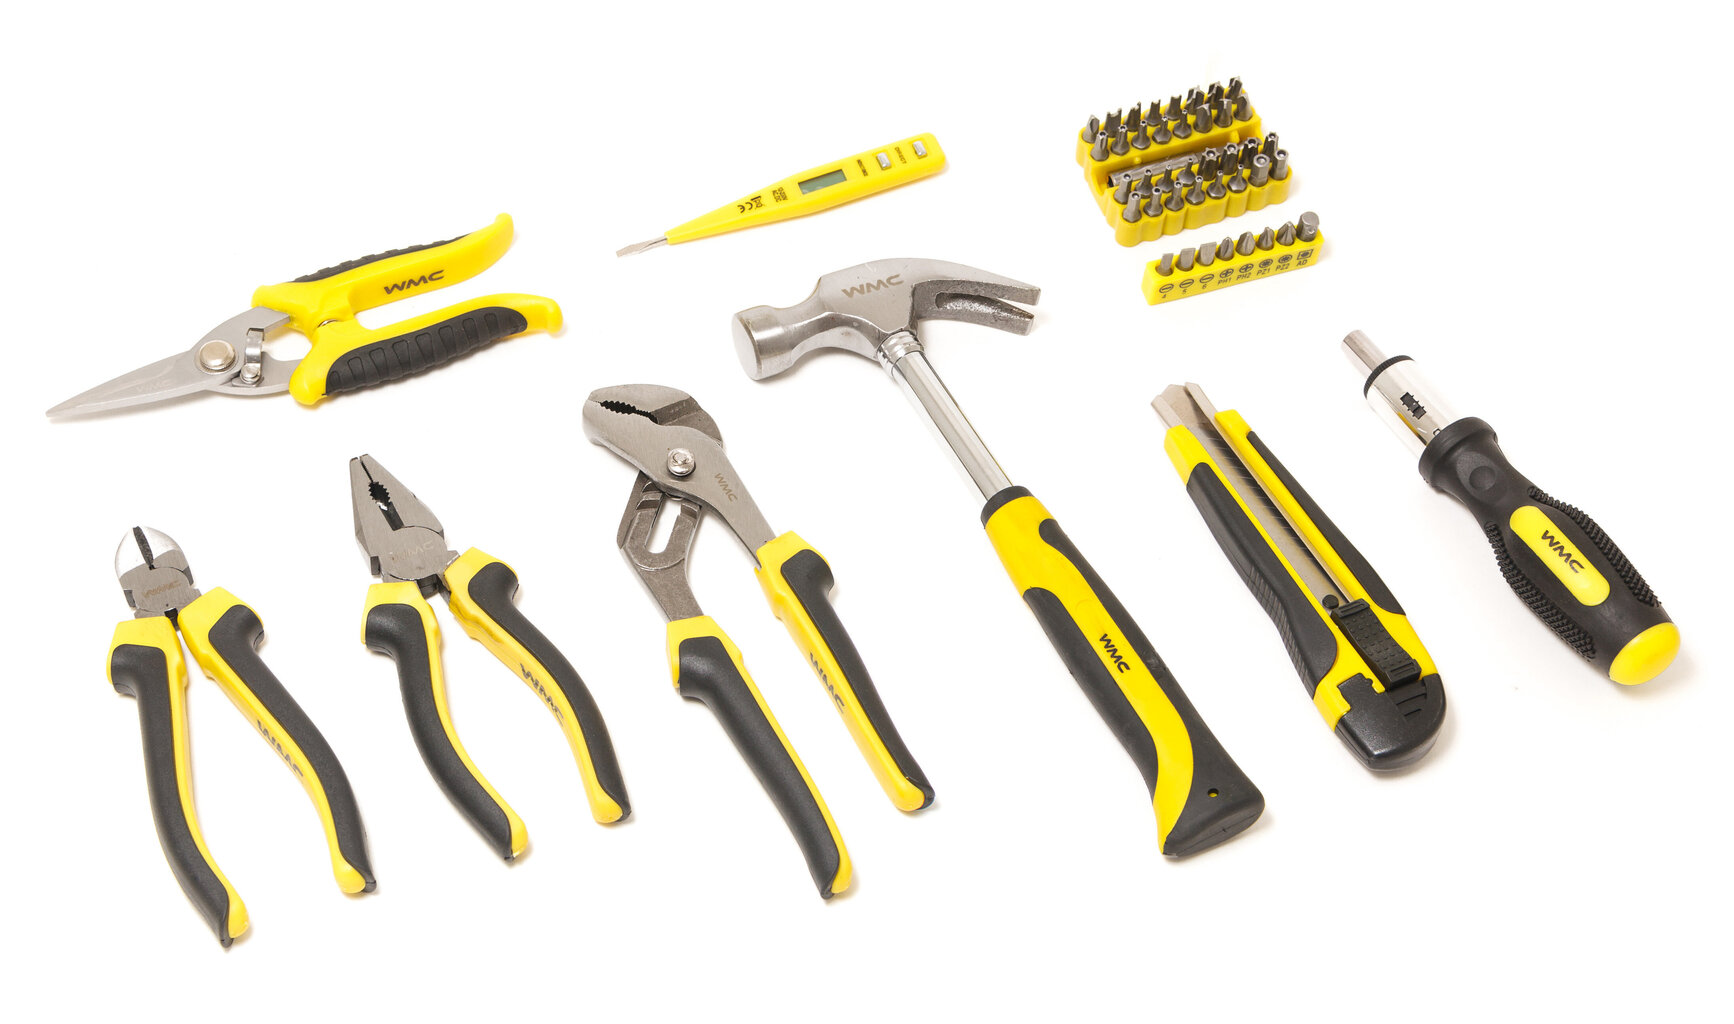 Įrankių rinkinys 49 dalių, WMC tools, 1049 цена и информация | Mechaniniai įrankiai | pigu.lt